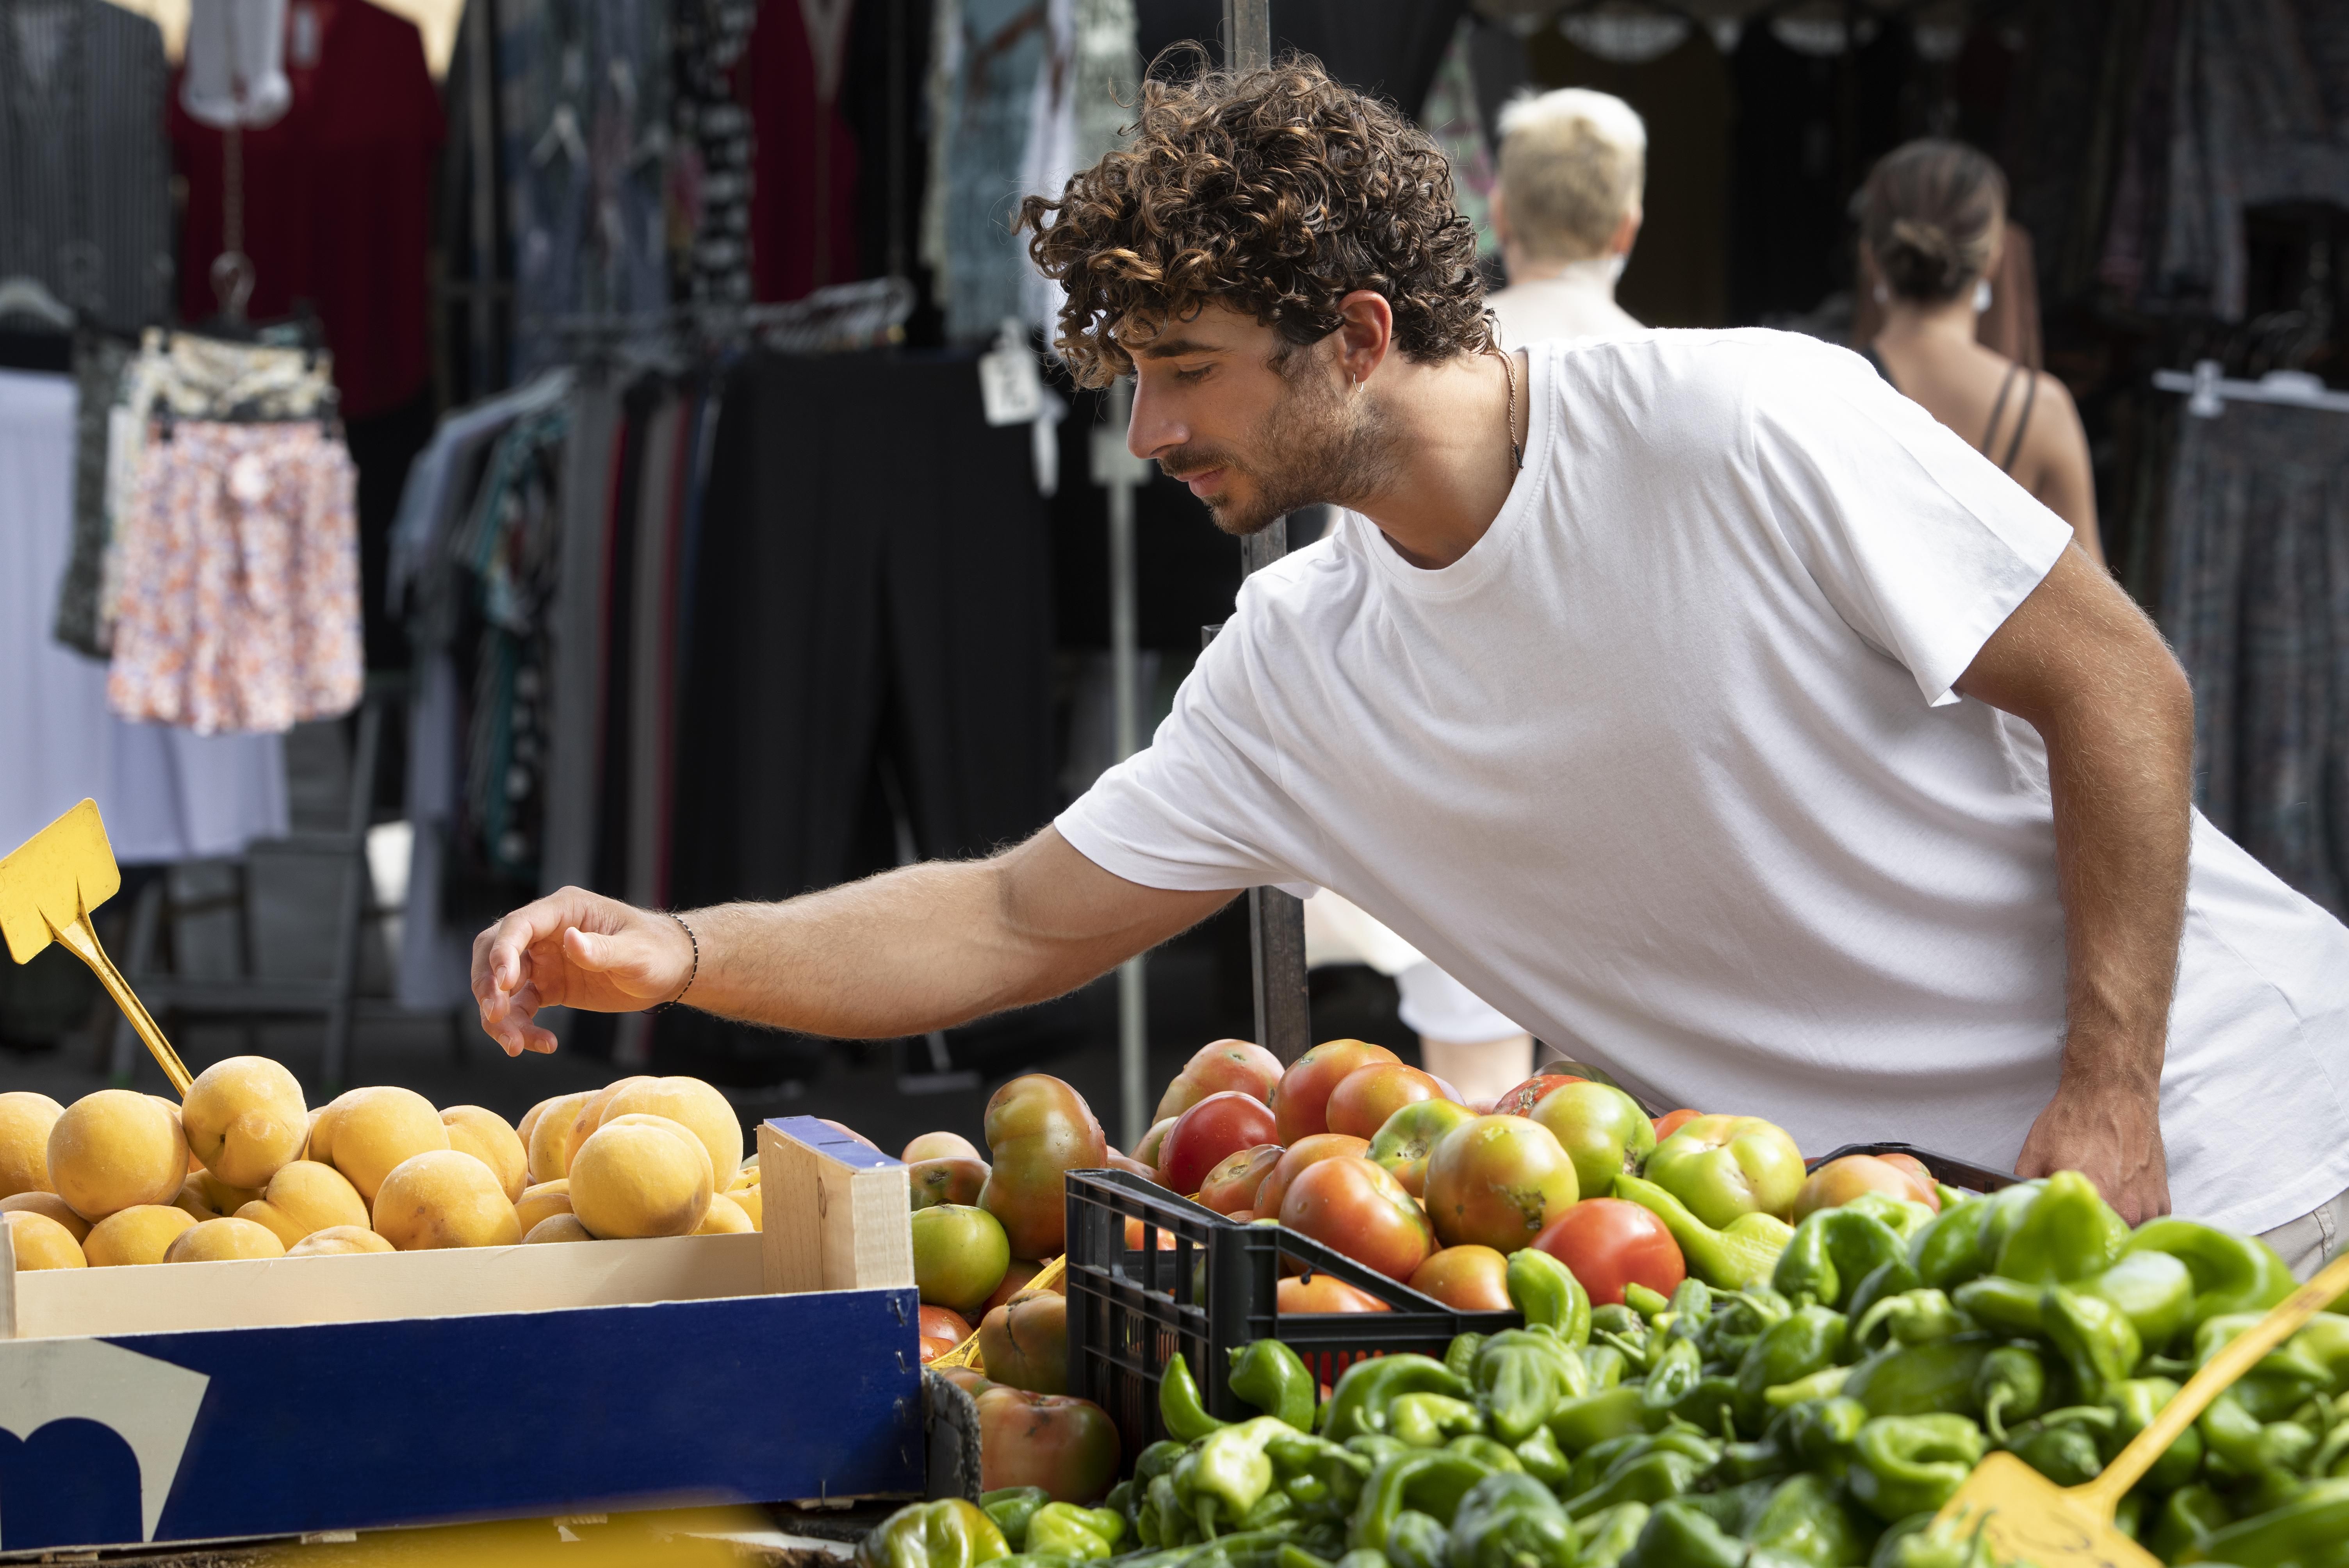 Un joven compra frutas y patatas, algunos de los alimentos que más se encarecen / FREEPIK